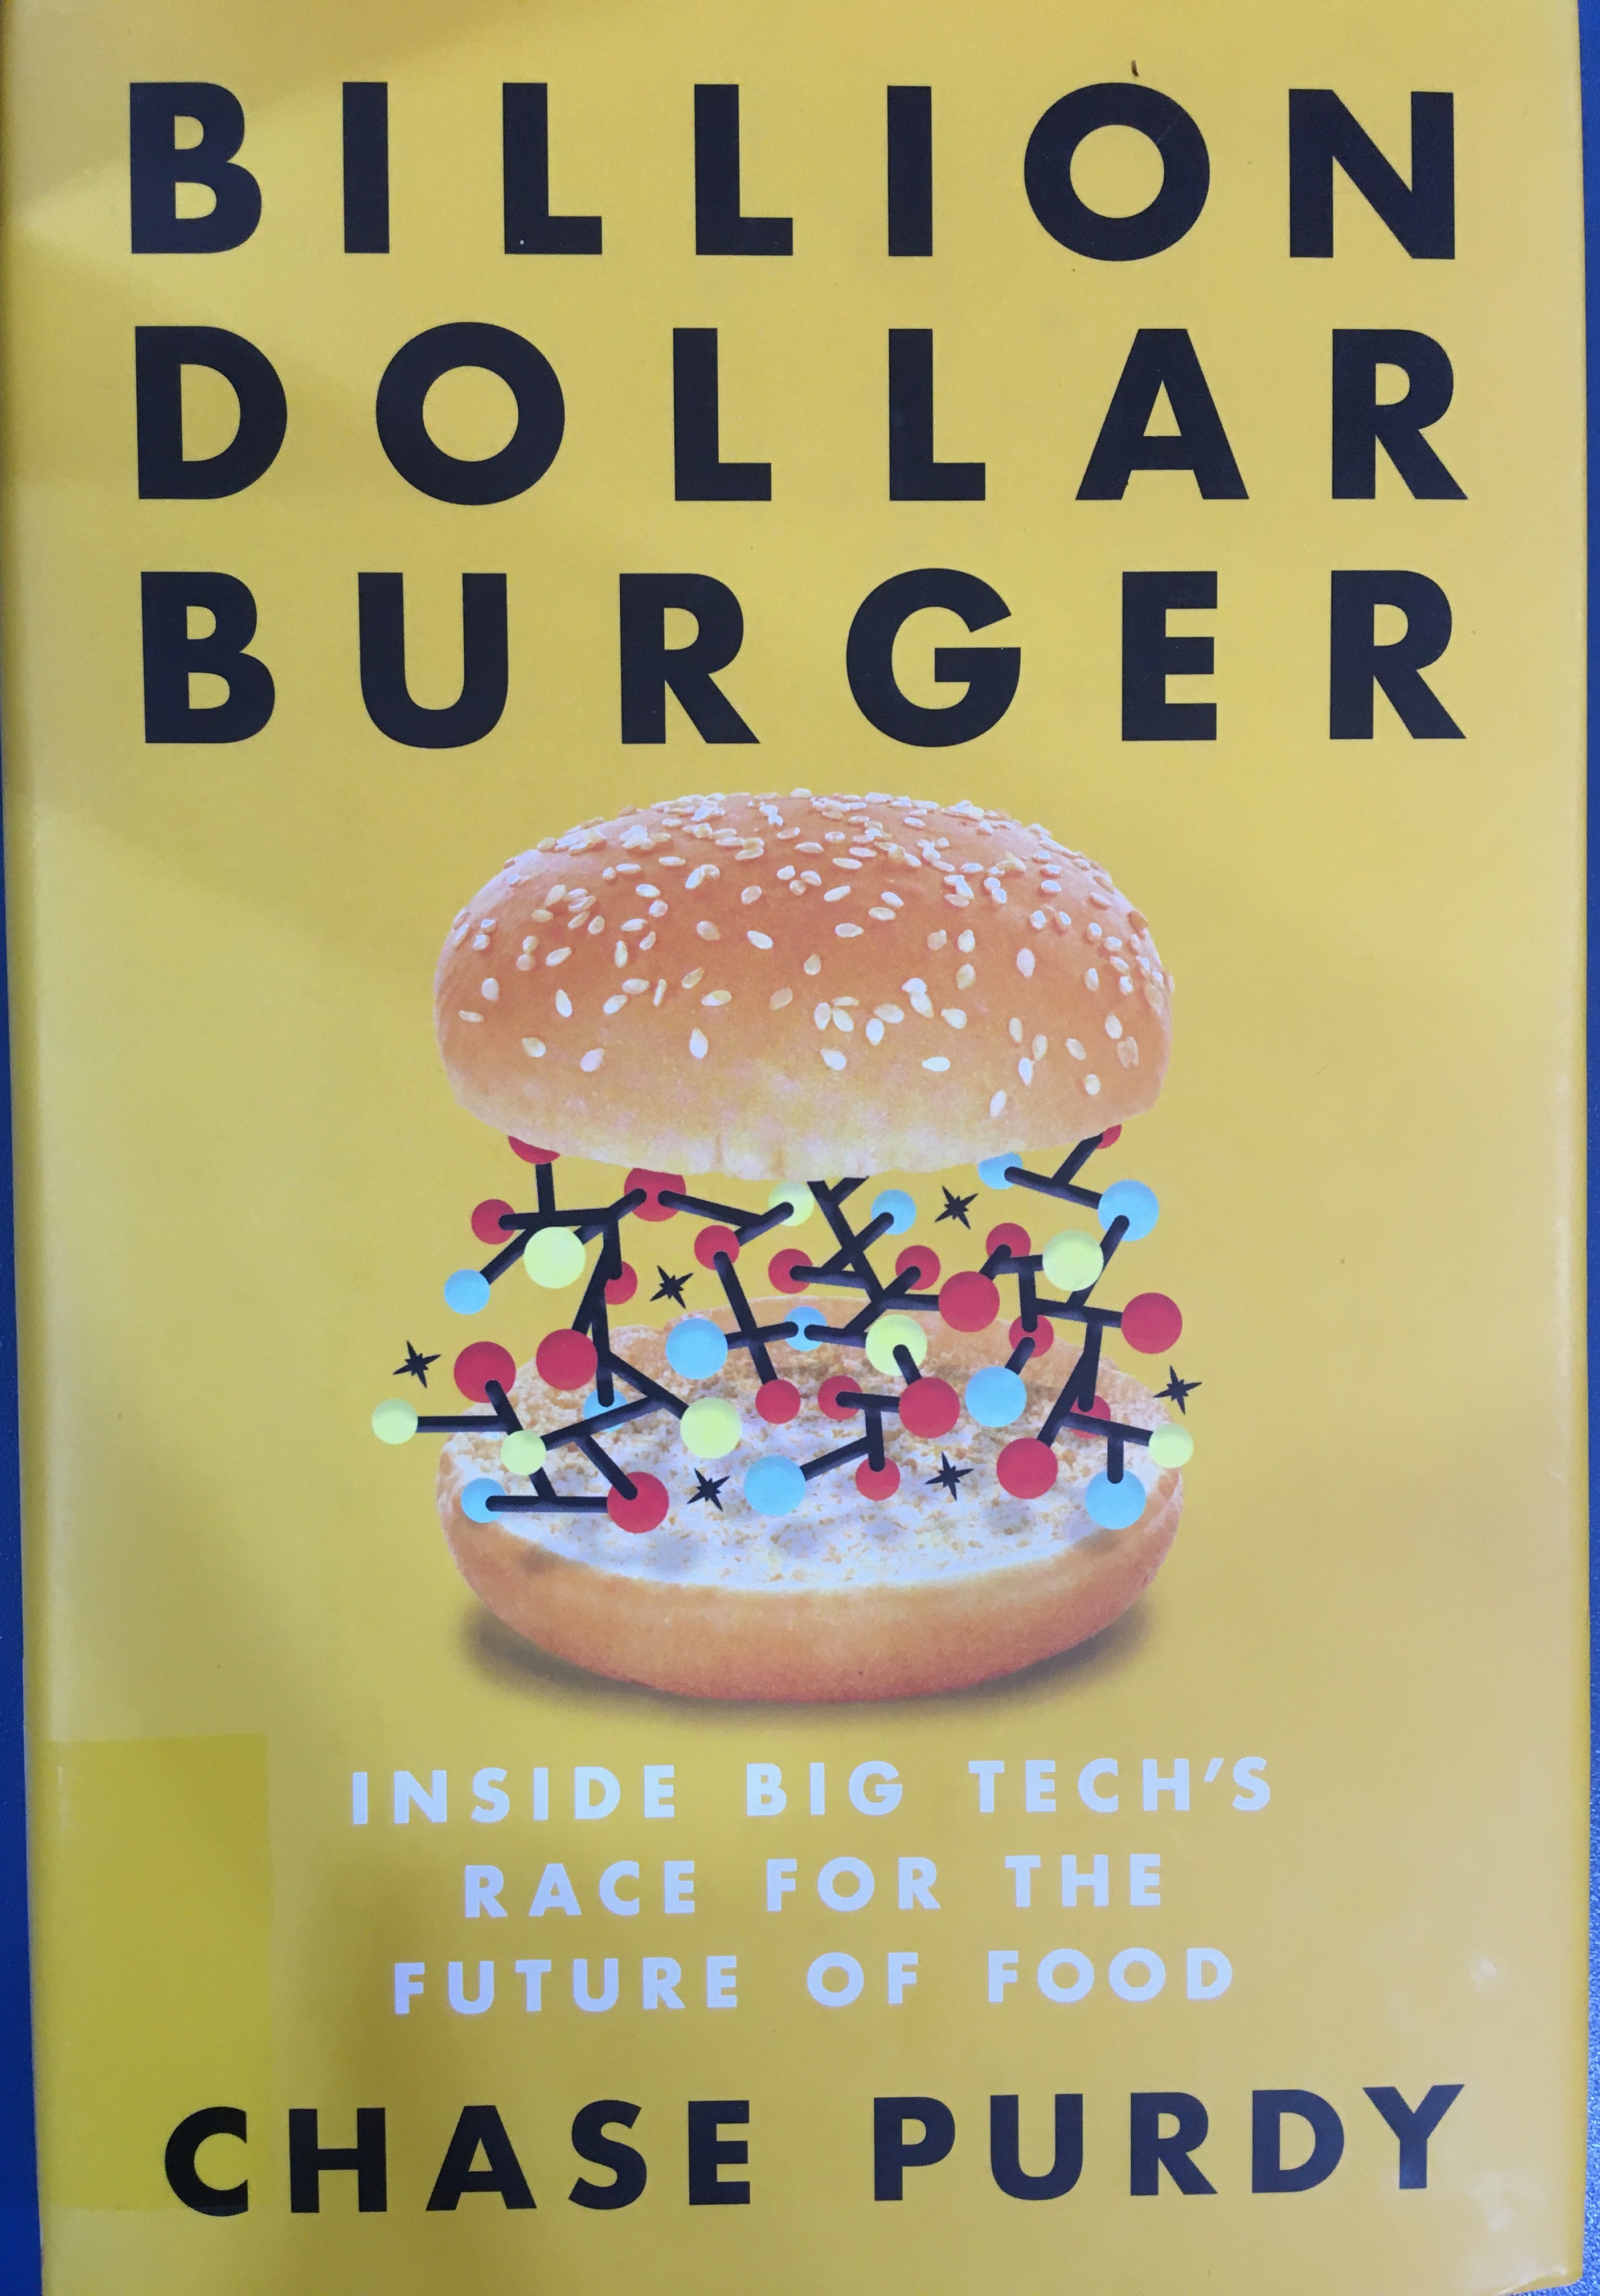 Chase Purdy Billion Dollar Burger című könyvének borítója.